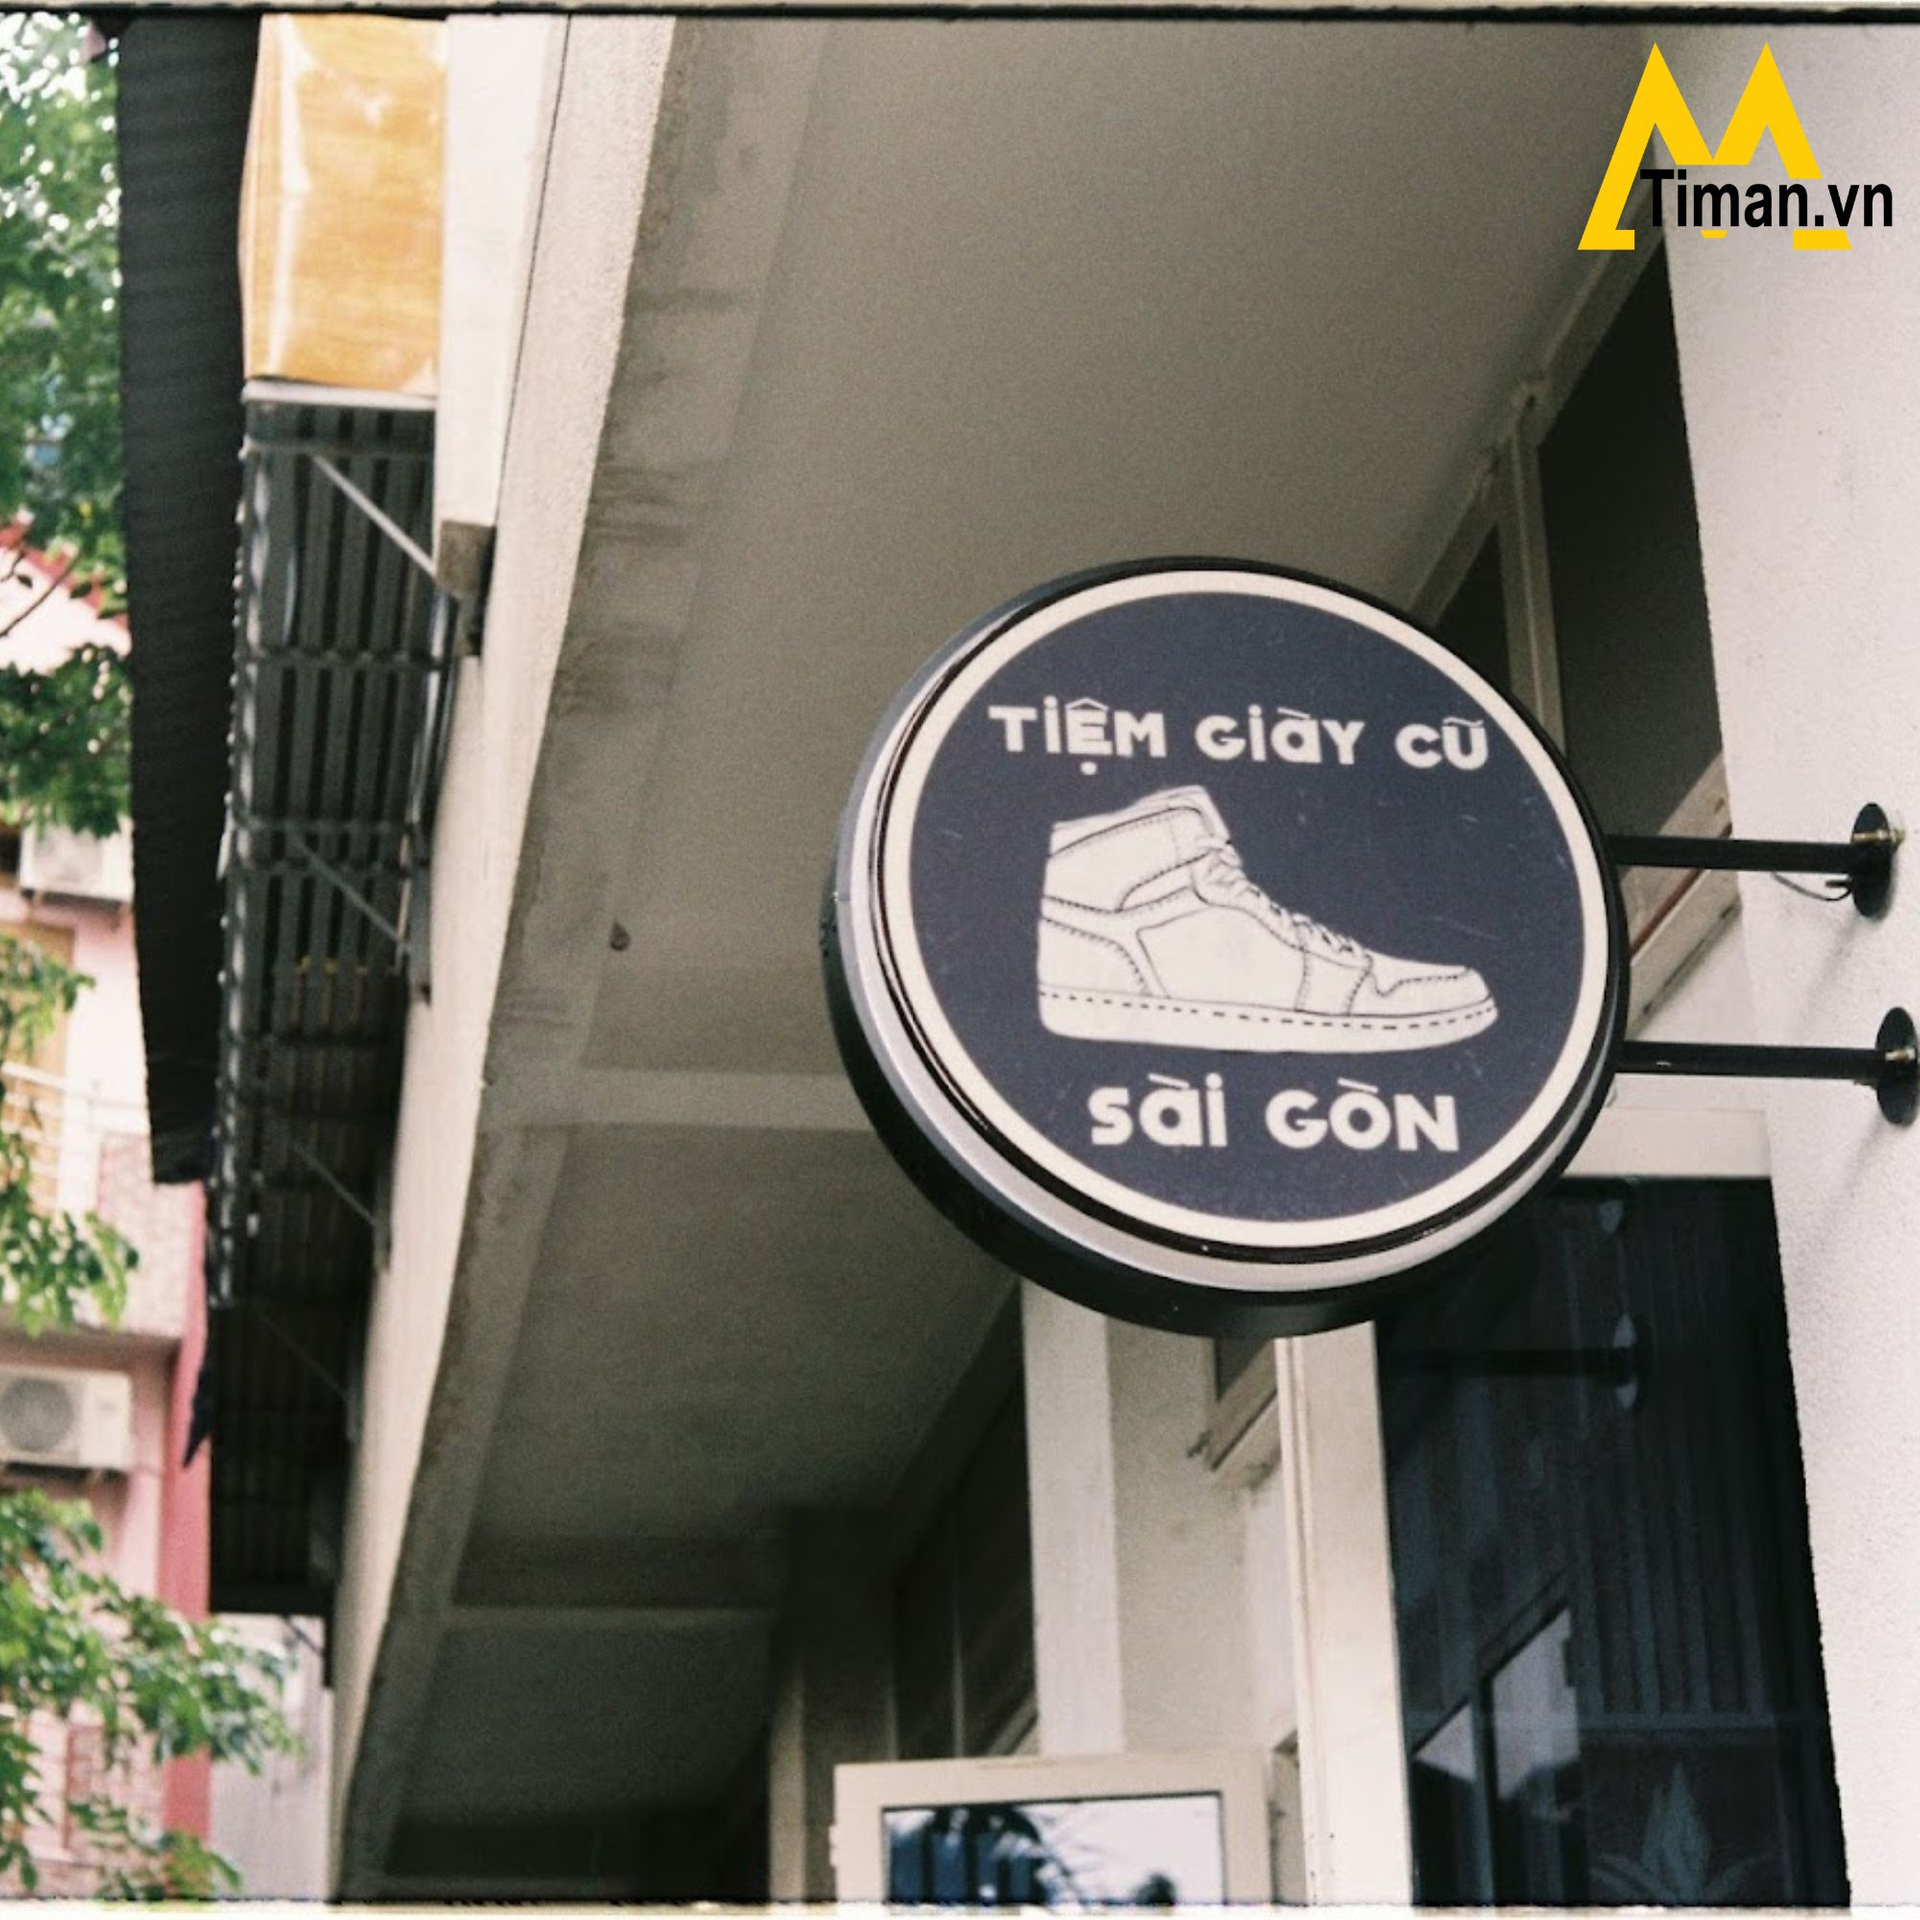 Tiệm giày cũ Sài Gòn